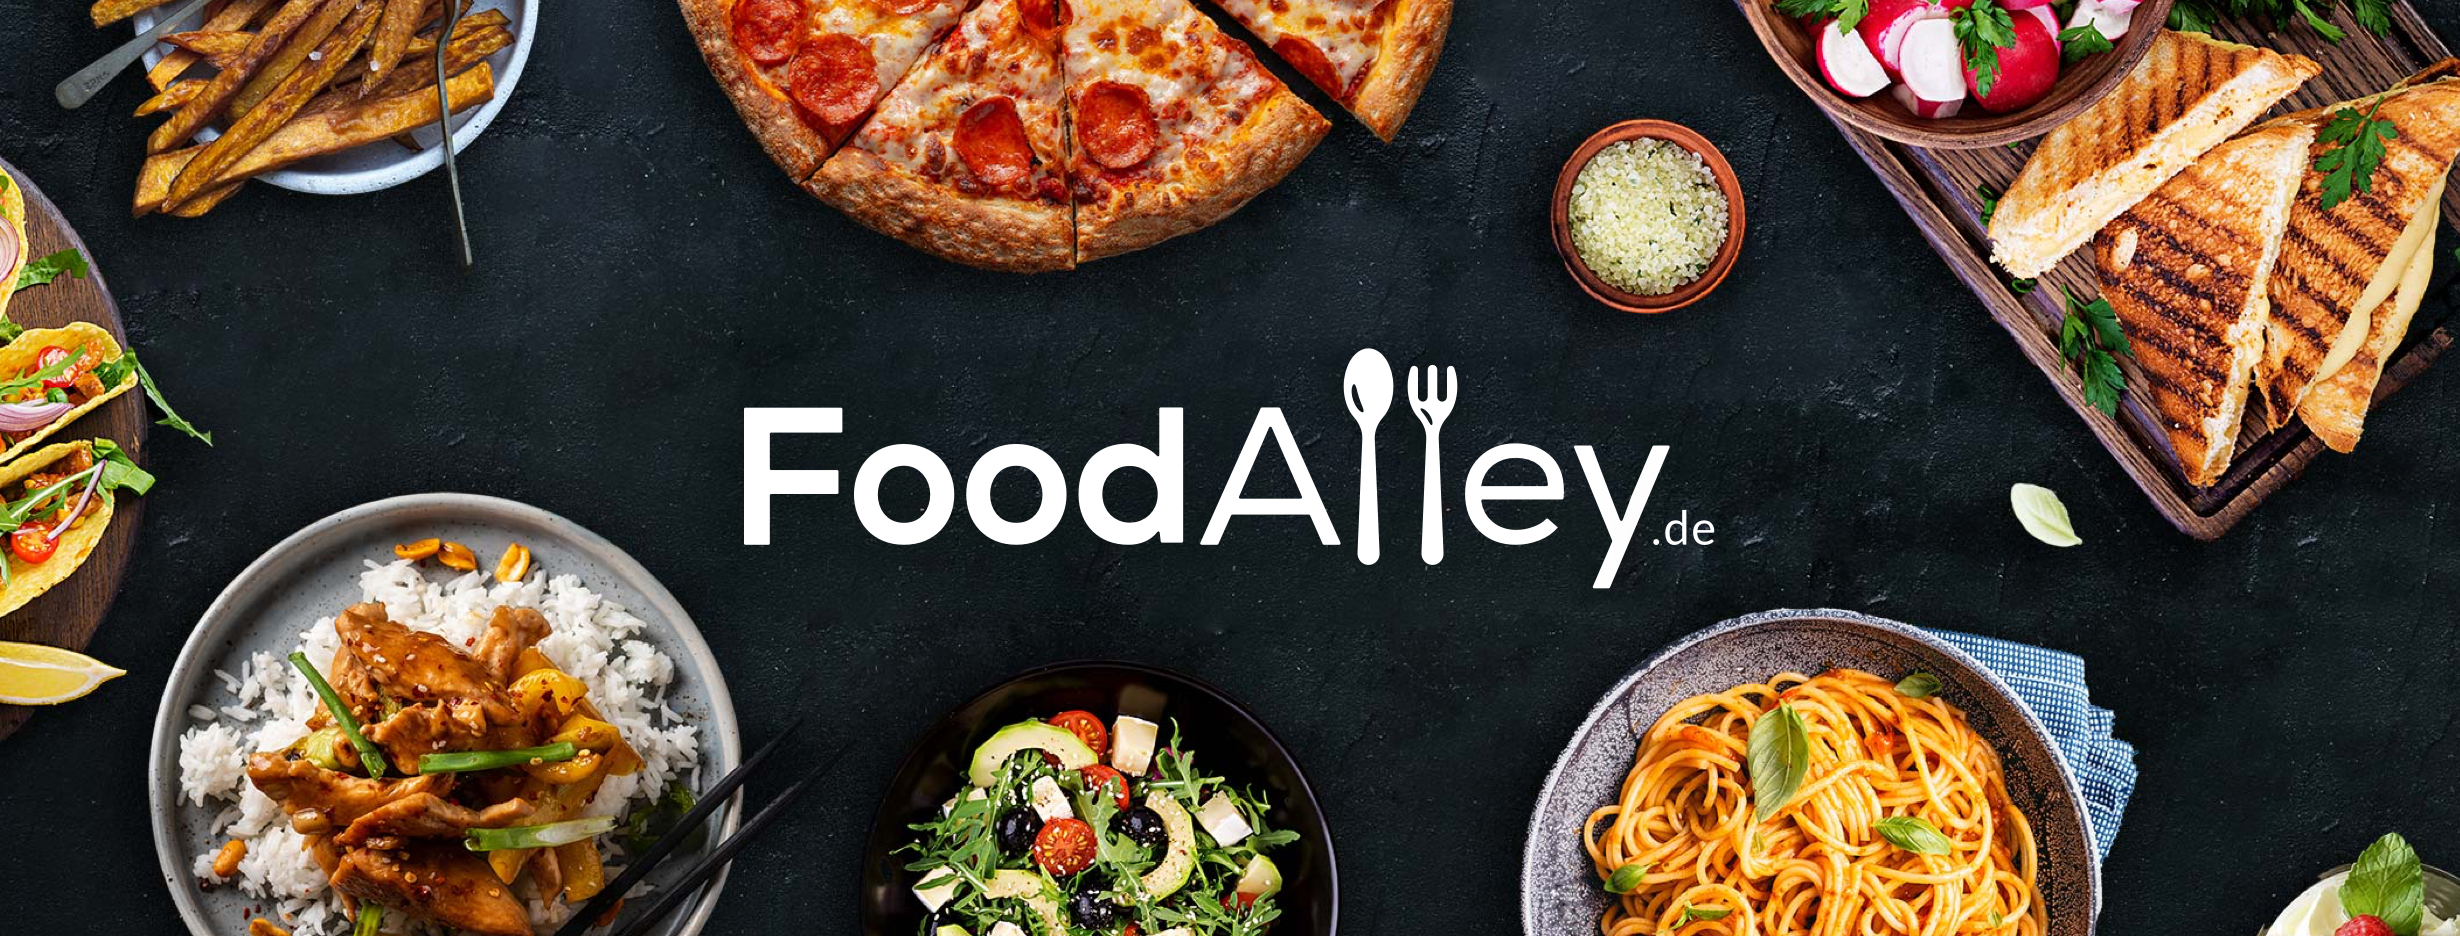 FoodAlley / startup von Zimmern ob Rottweil / Background